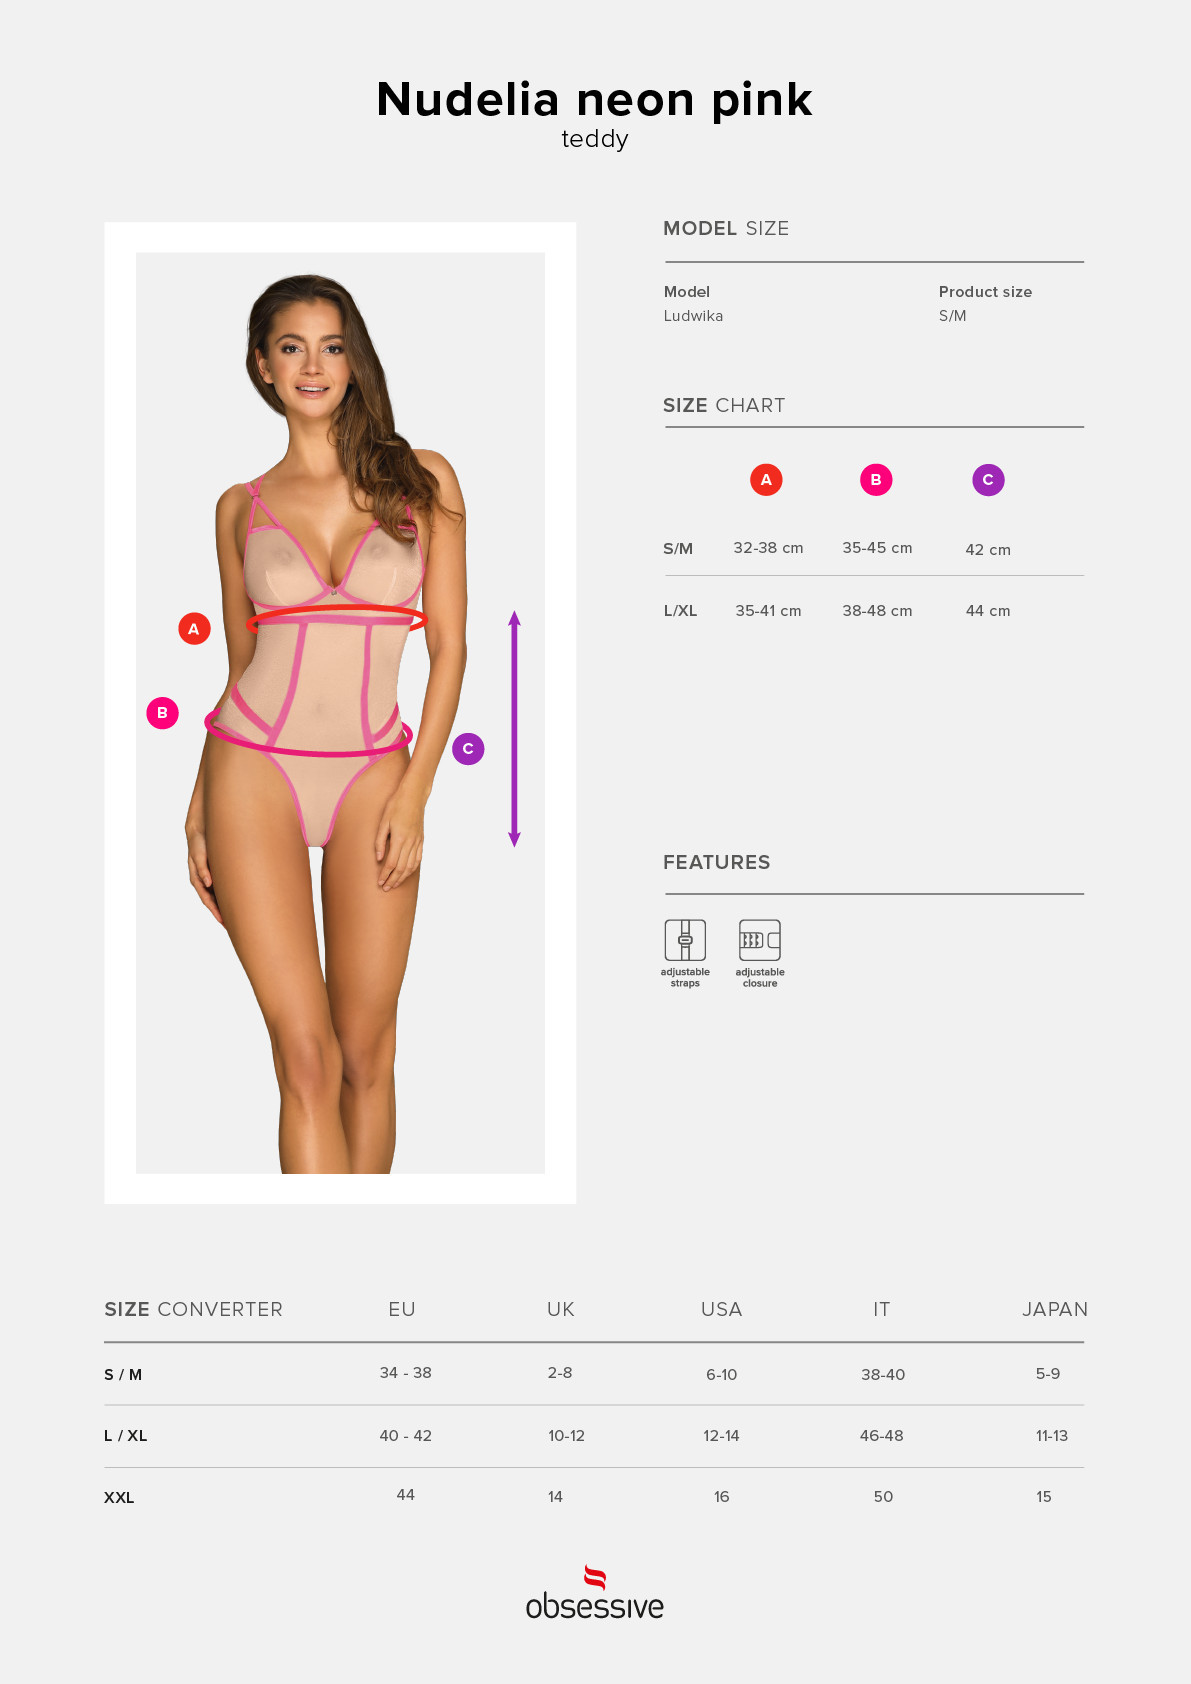 Elegantní body model 15537101 teddy neon pink růžová L / XL - Obsessive